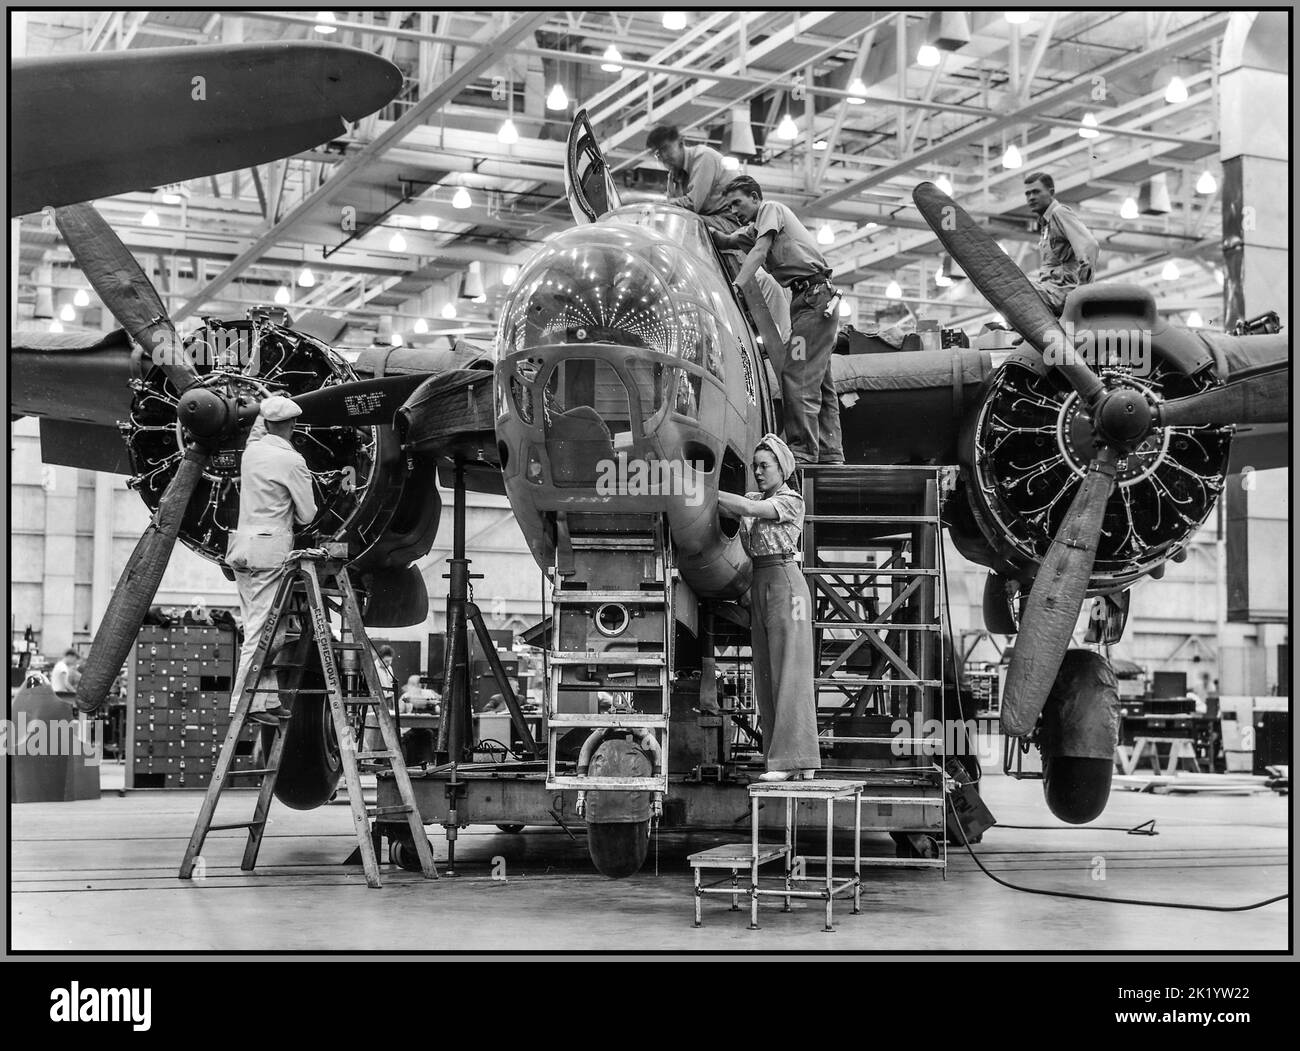 WW2 Producción de aviones bombarderos USA Los trabajadores experimentados de la línea de montaje de ambos sexos contribuyen a la producción de trabajos bélicos de bombarderos De ataque A-20 en la planta de Douglas Aircraft en Long Beach, California América USA Fecha alrededor de octubre de 1942 Foto de stock